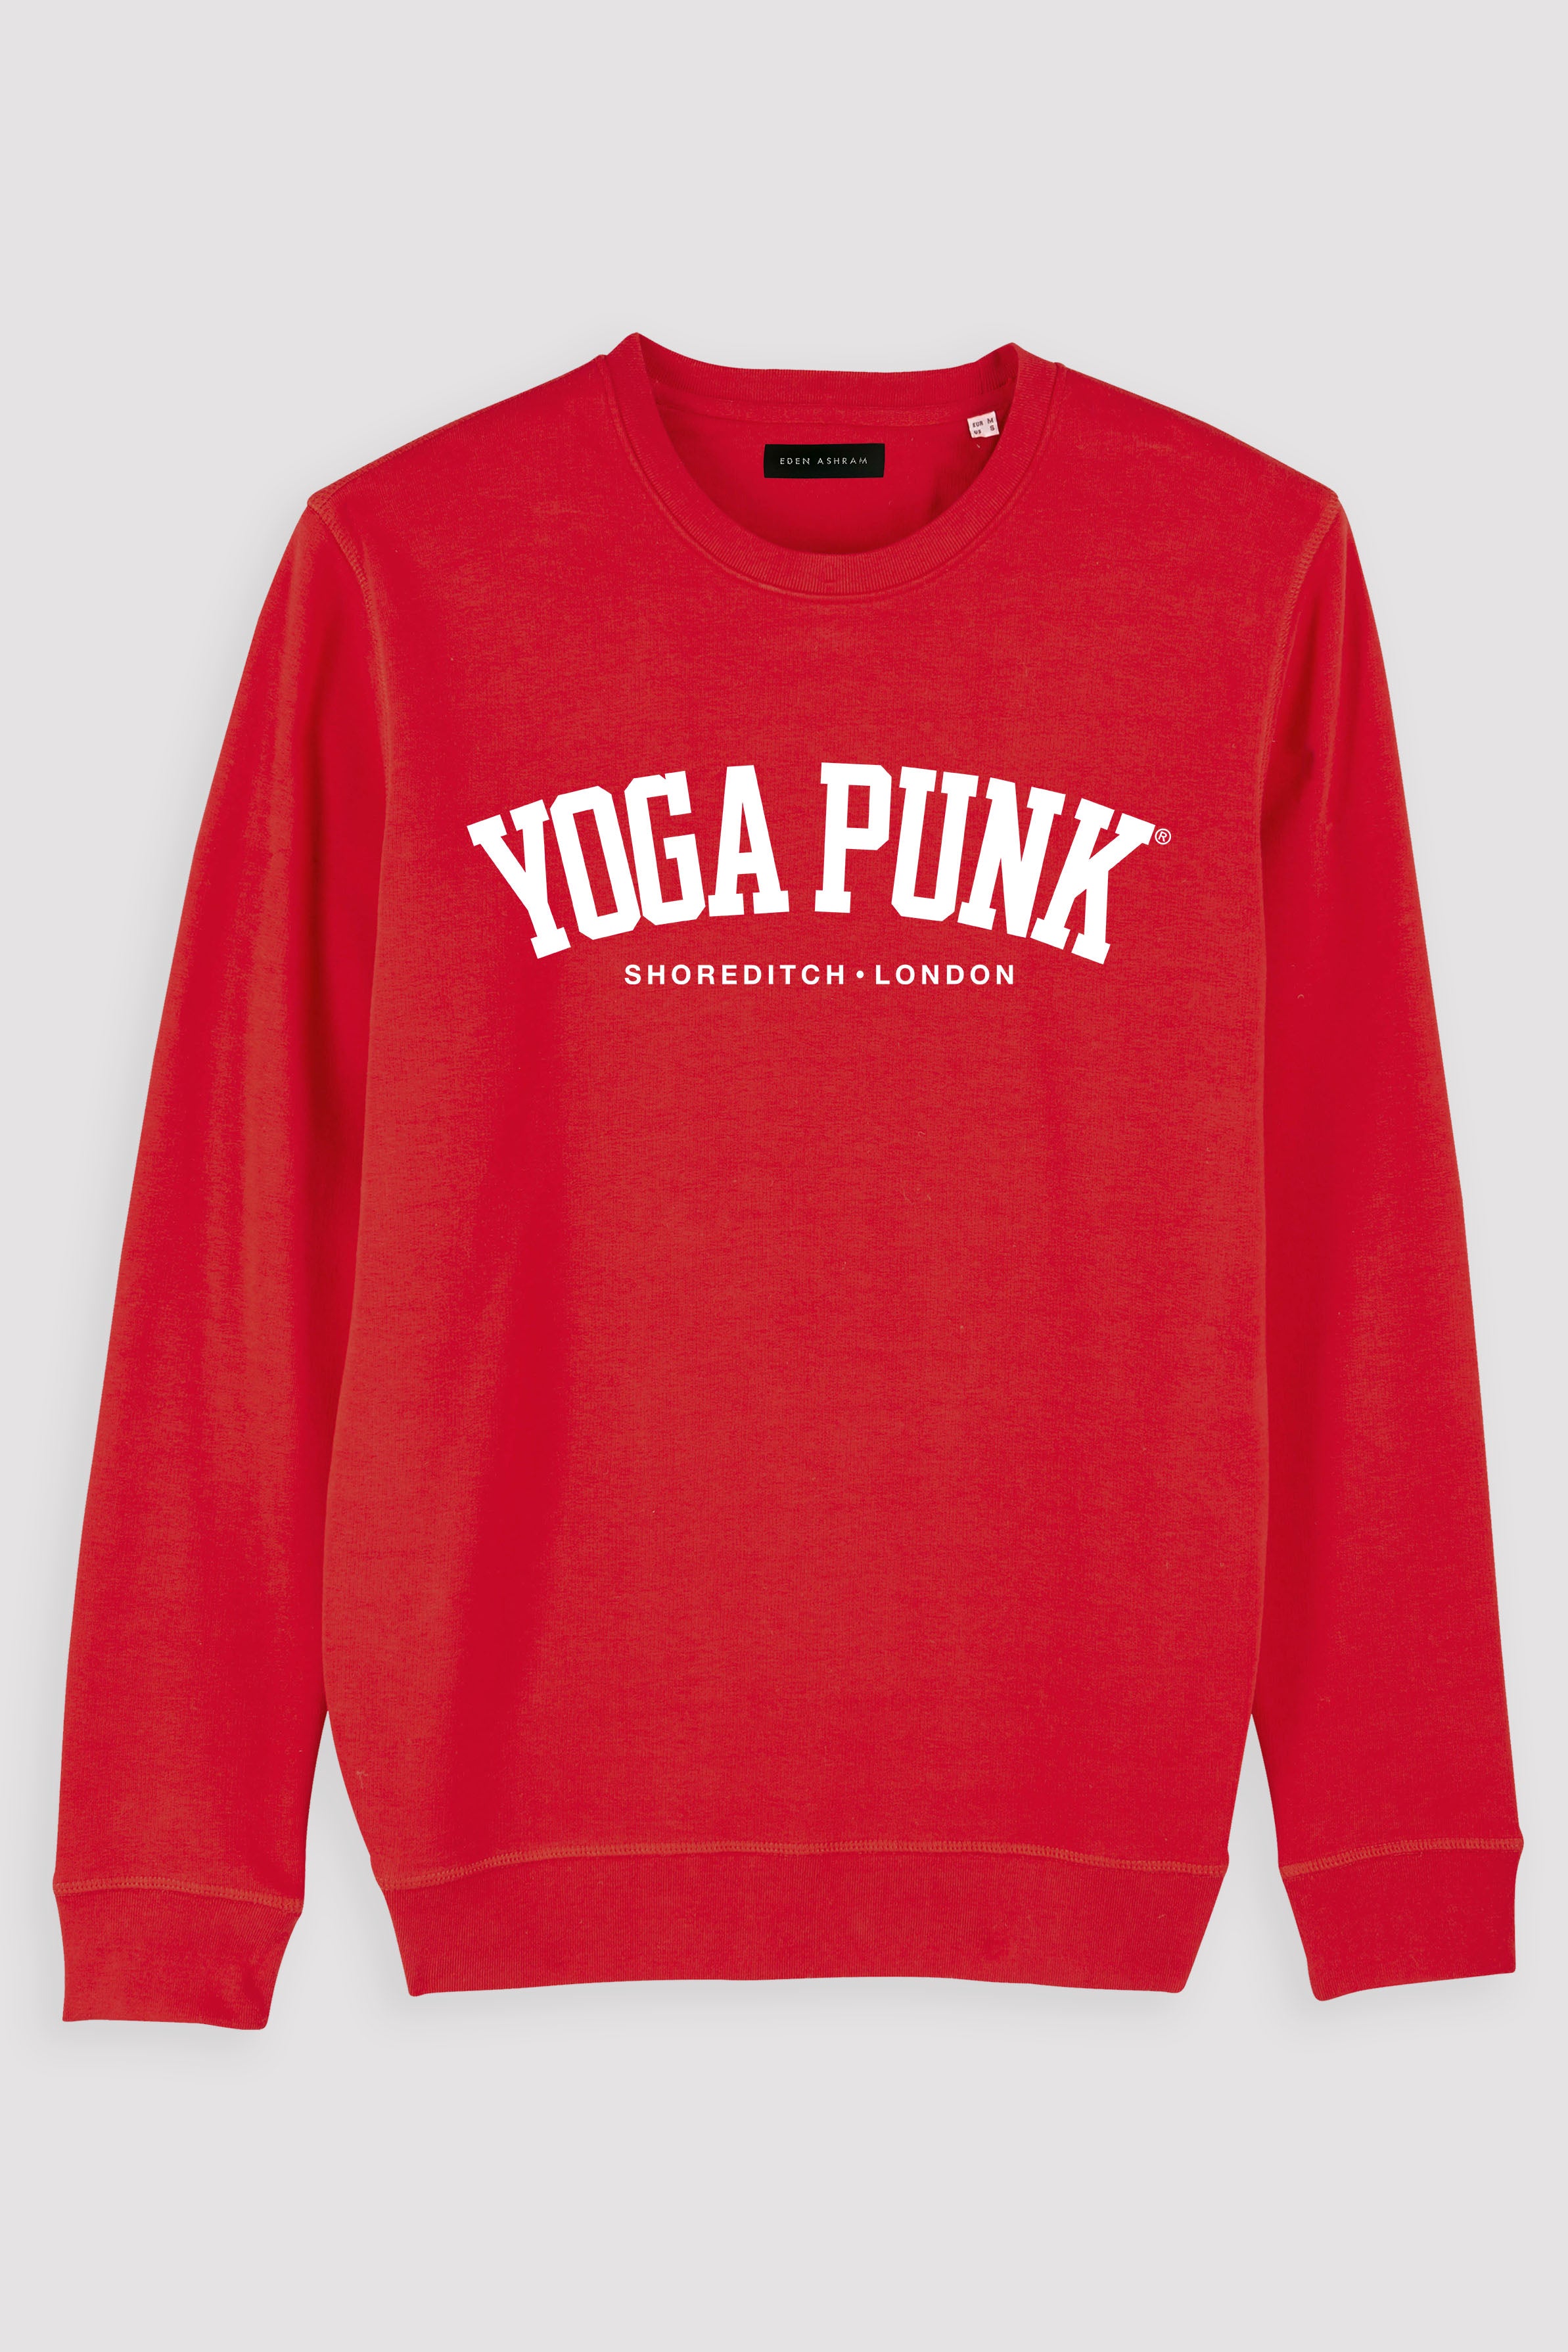 EDEN ASHRAM Yoga Punk Premium Crew Neck Sweatshirt Red